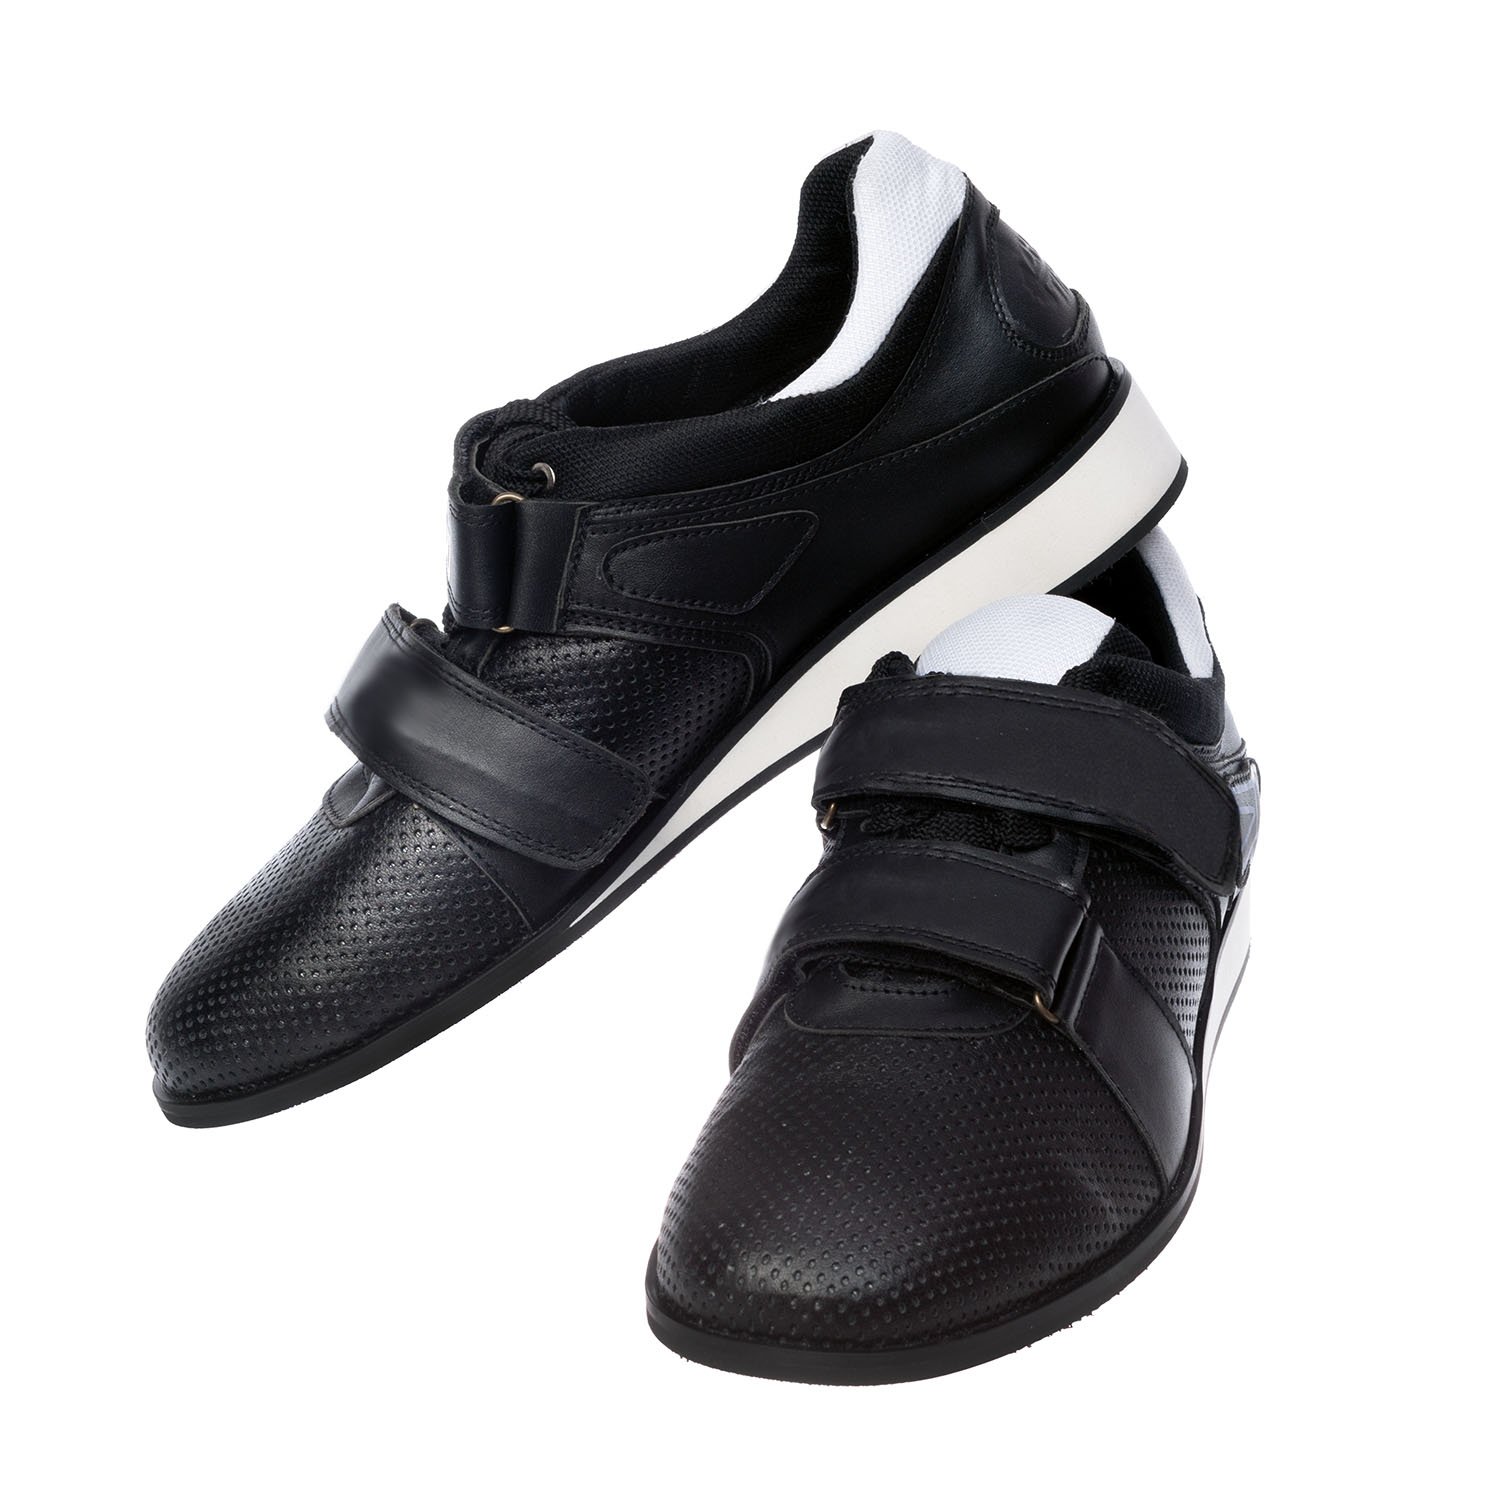 Weightlifting shoes Zhabotinsky Classic, black, size 42 (UKR)